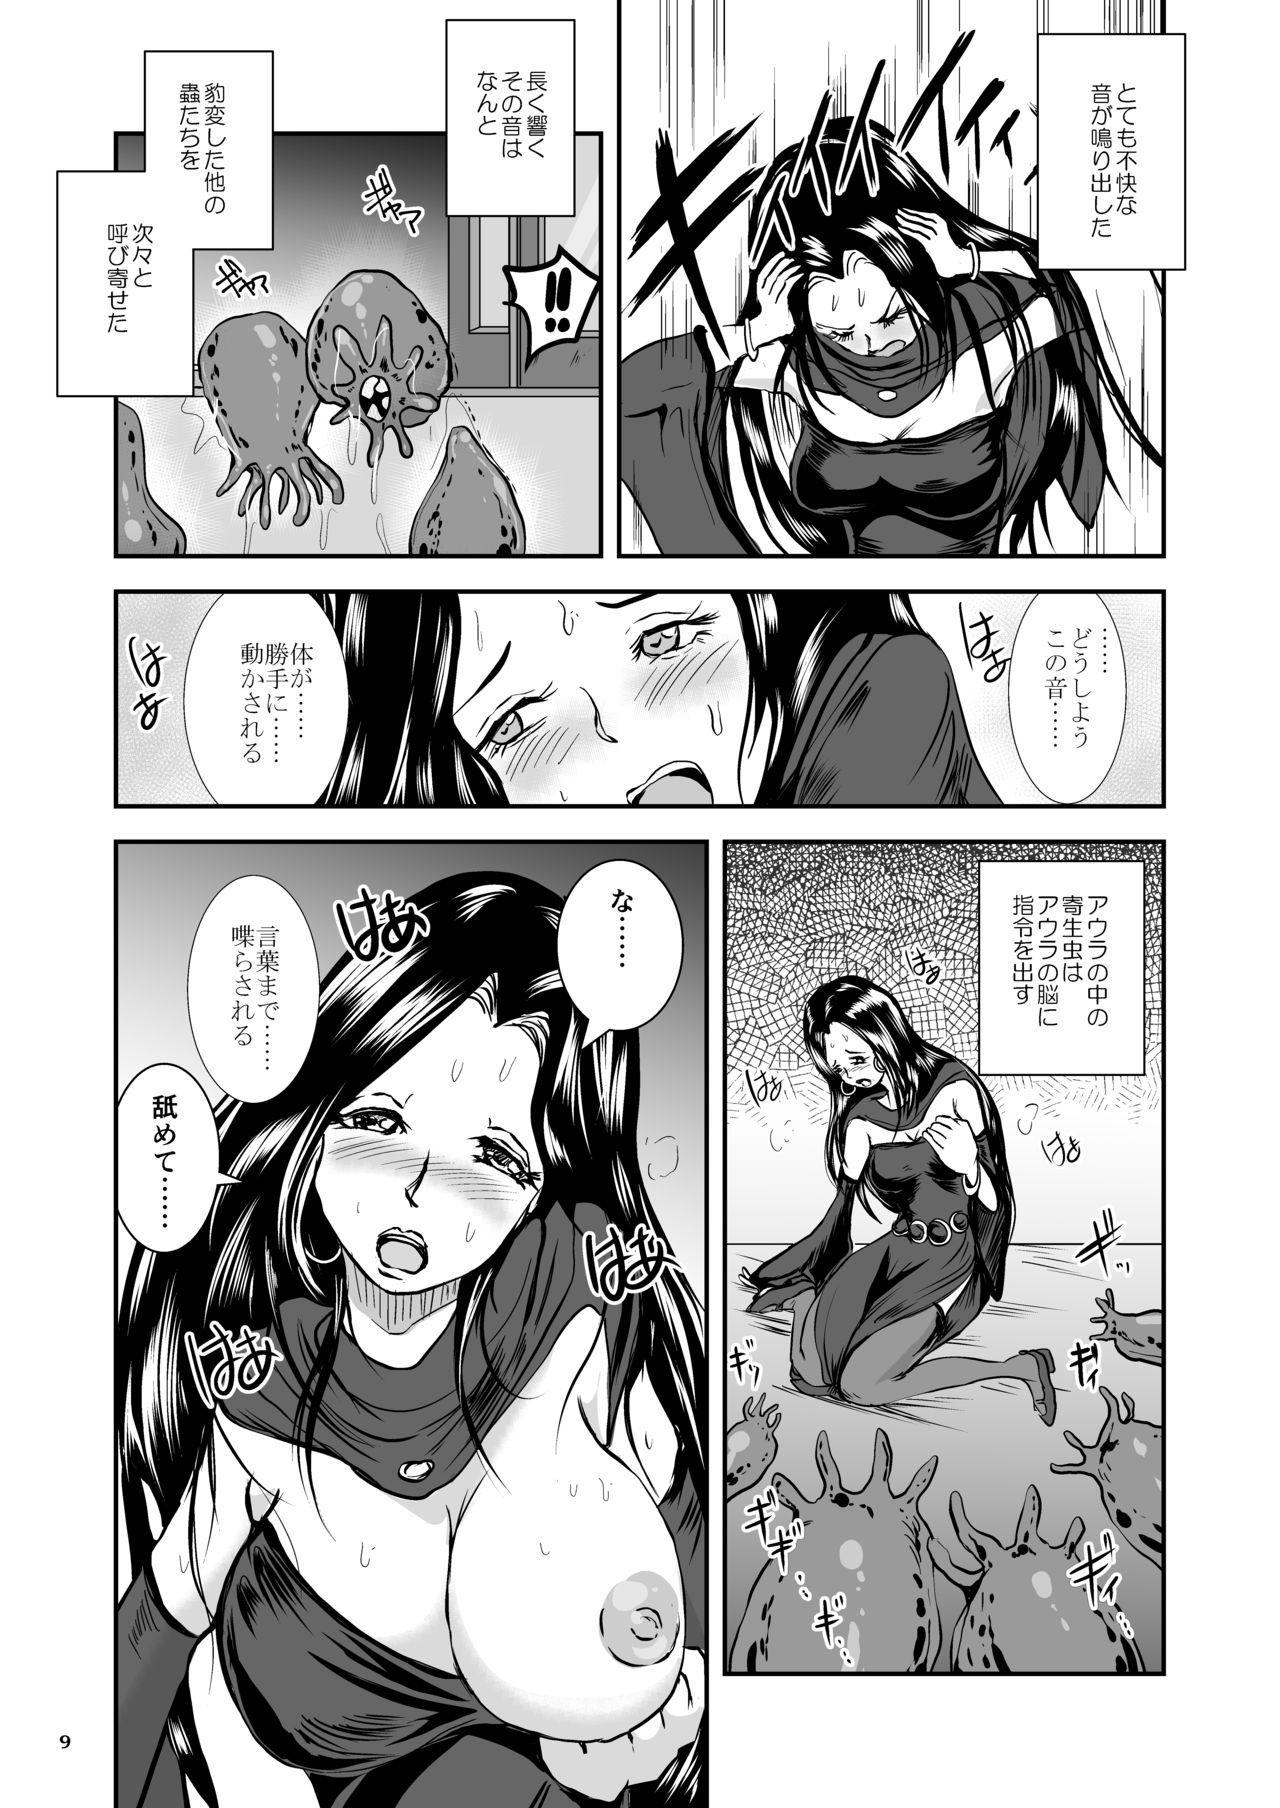 Oonamekuji to Kurokami no Mahoutsukai - Parasitized Giant Slugs V.S. Sorceress of the Black Hair as Aura 100